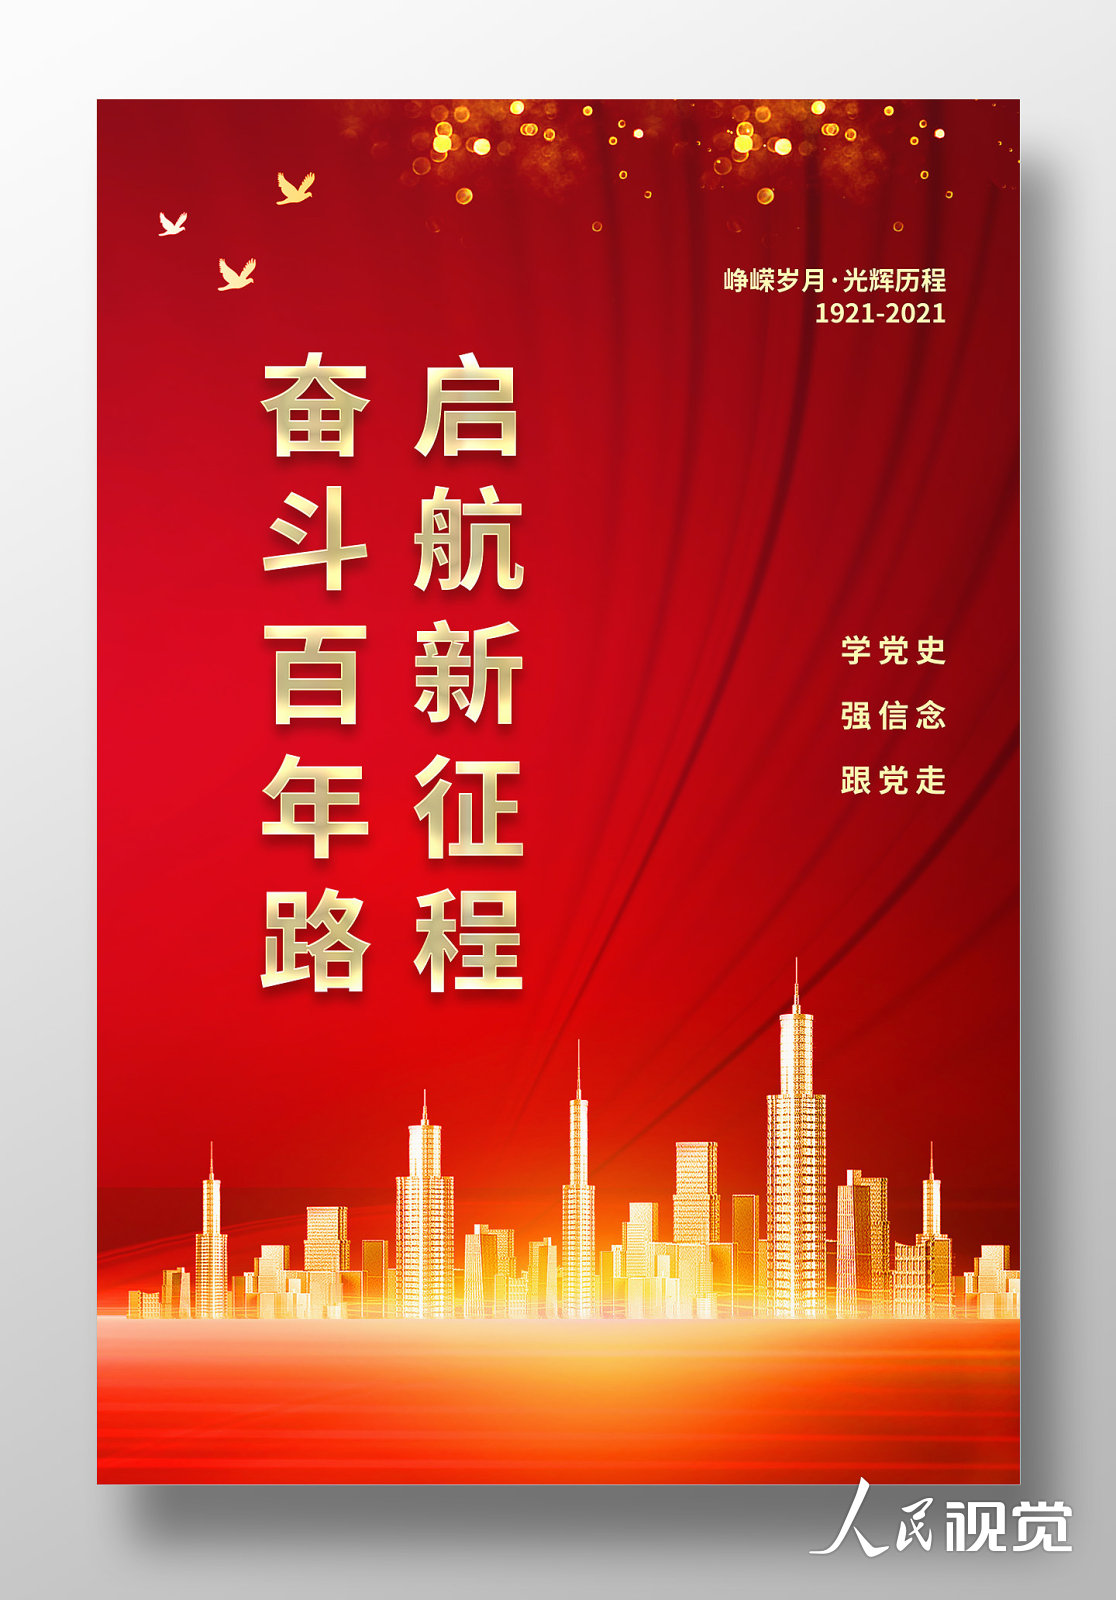 红色奋斗百年路启航新征程宣传海报设计模板素材